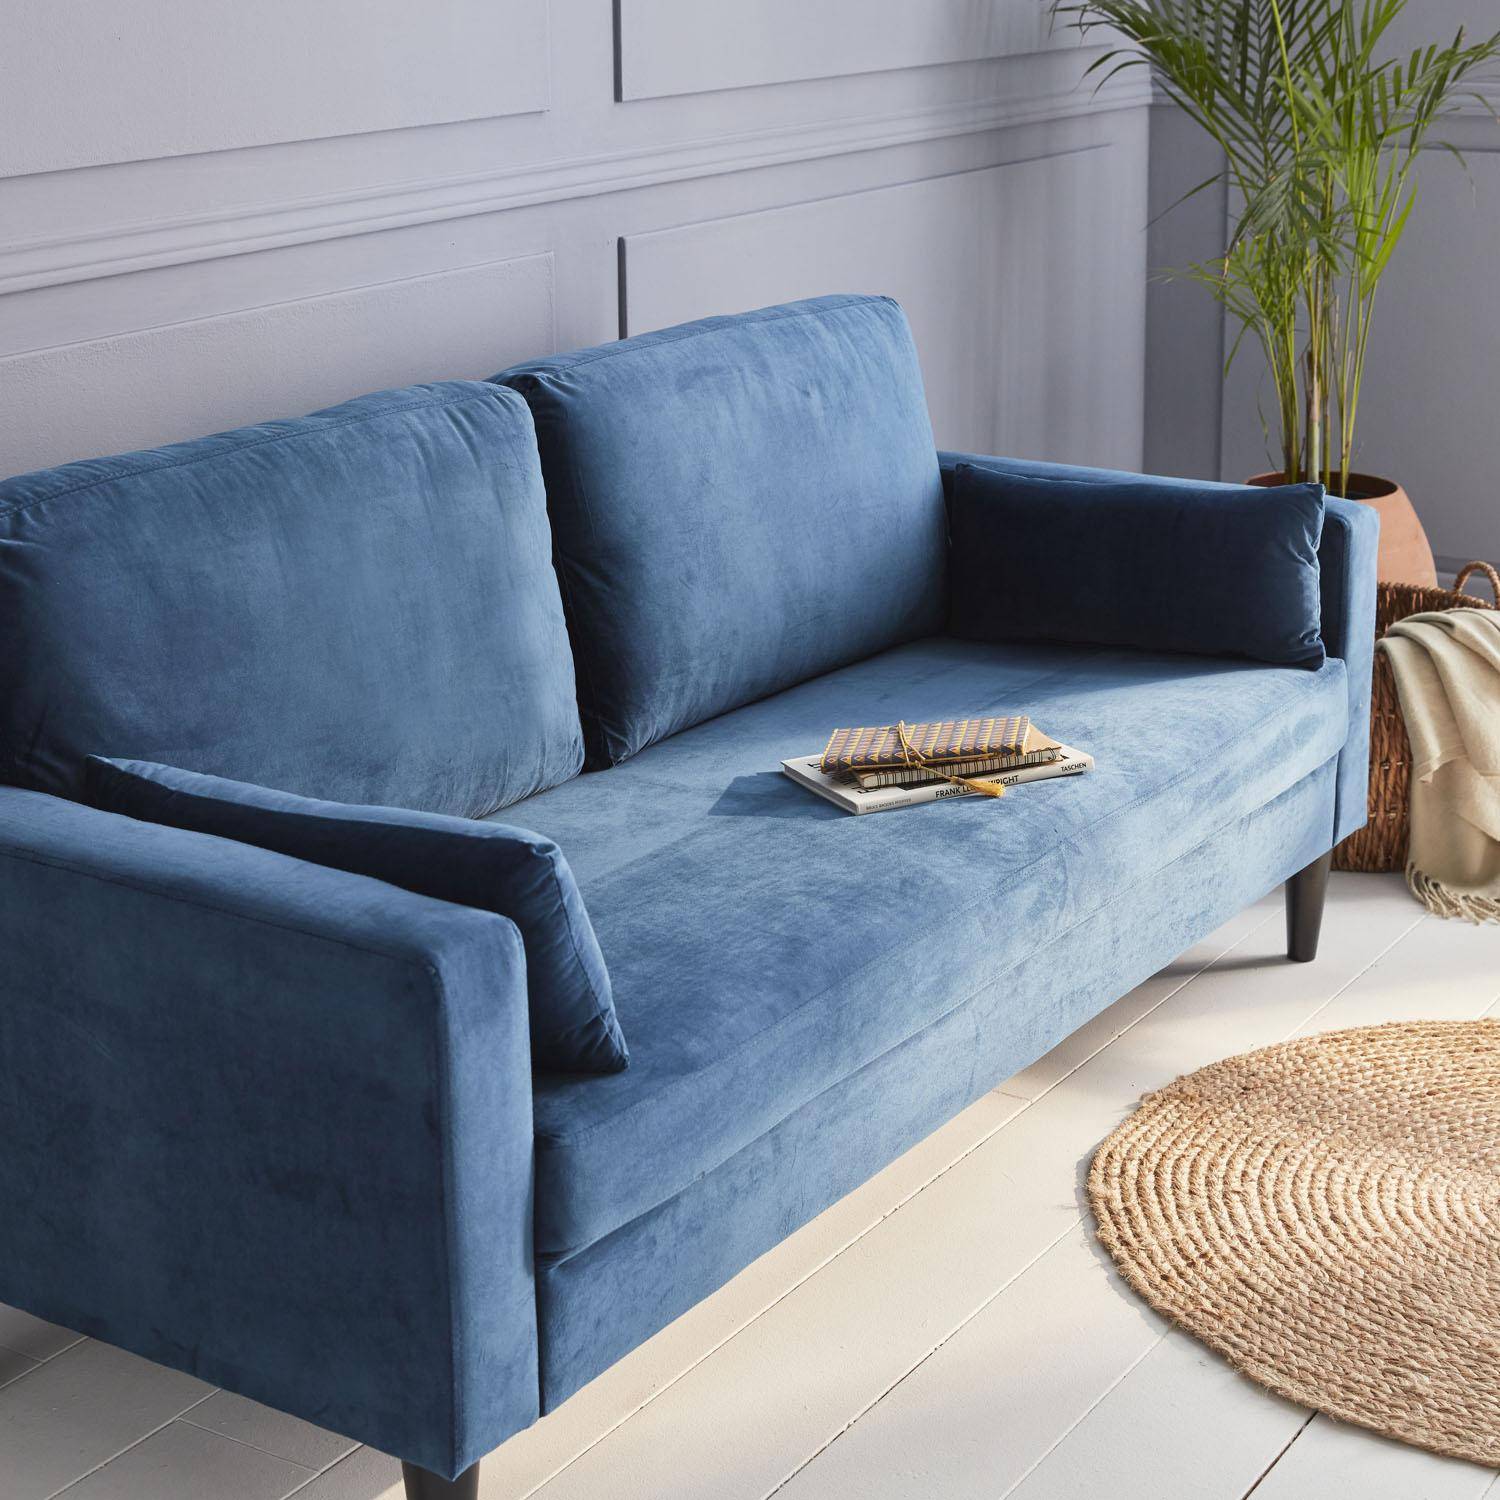 Gerades Sofa Blauer Samt - Bjorn - 3er Sofa mit Holzbeinen in skandinavischem Design Photo2